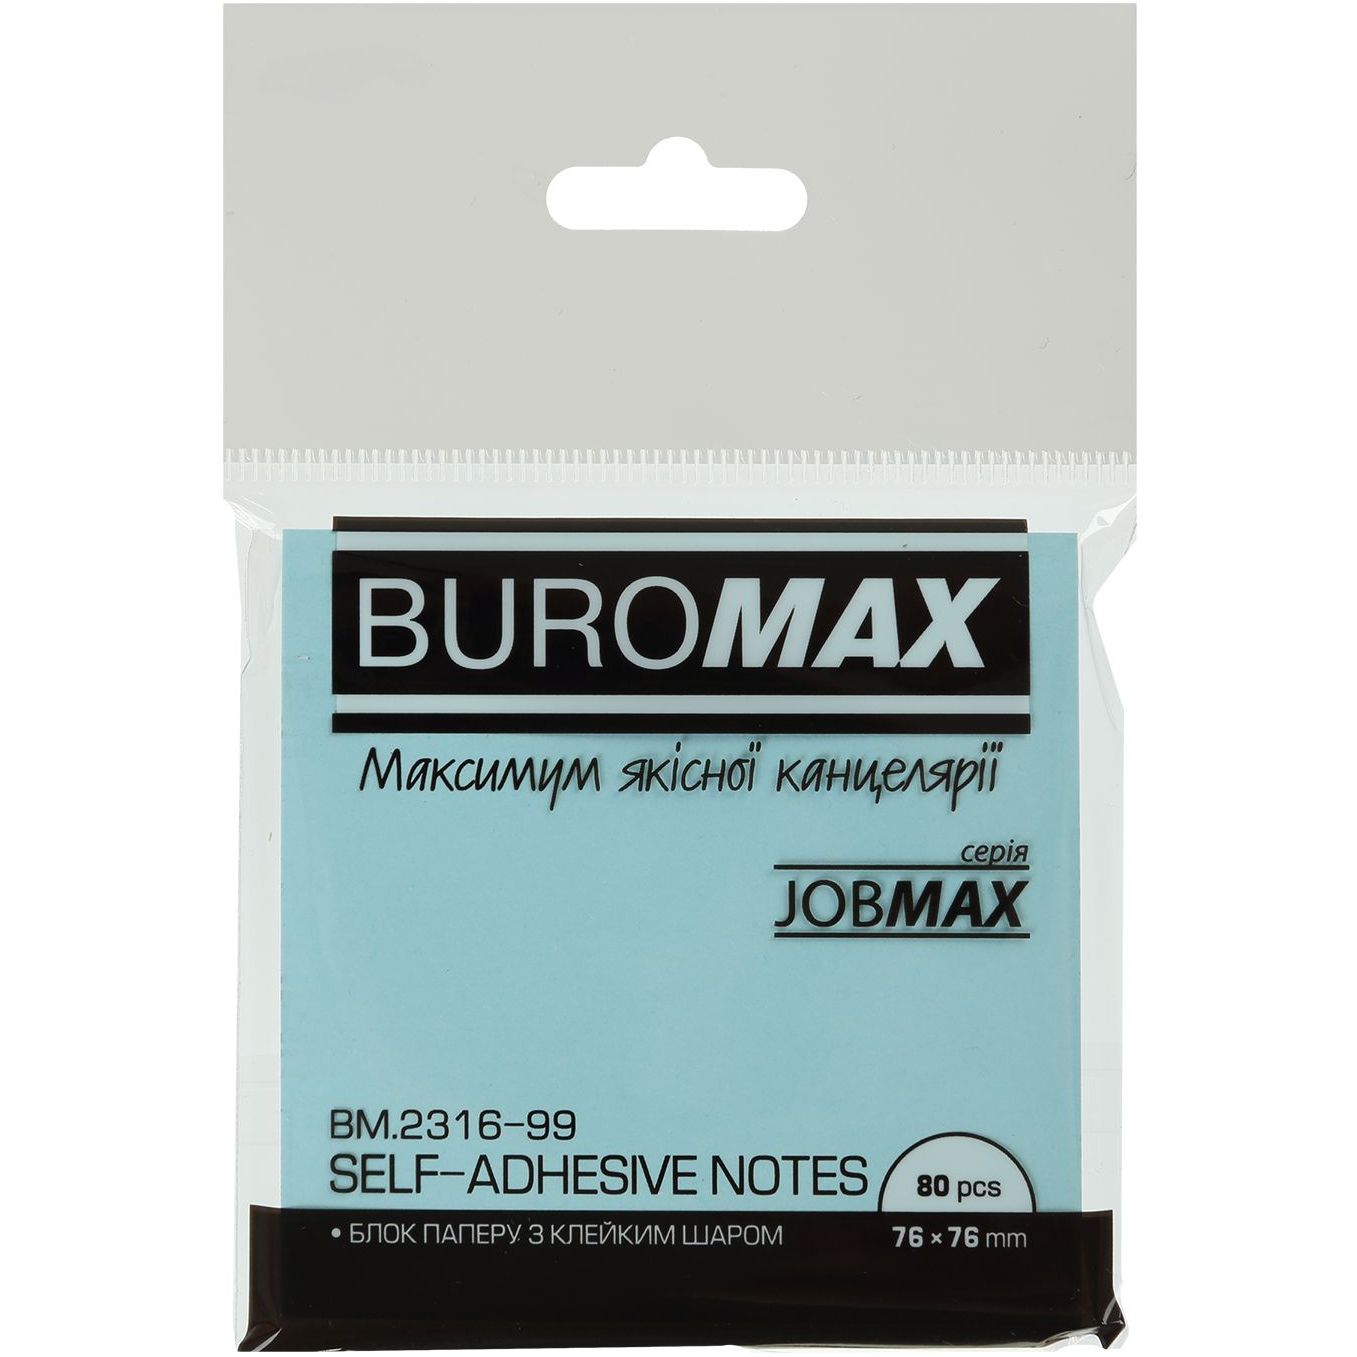 Блок бумаги для заметок Buromax Jobmax Pastel с клейким слоем 76х76 мм 80 листов в ассортименте (BM.2316-99) - фото 2